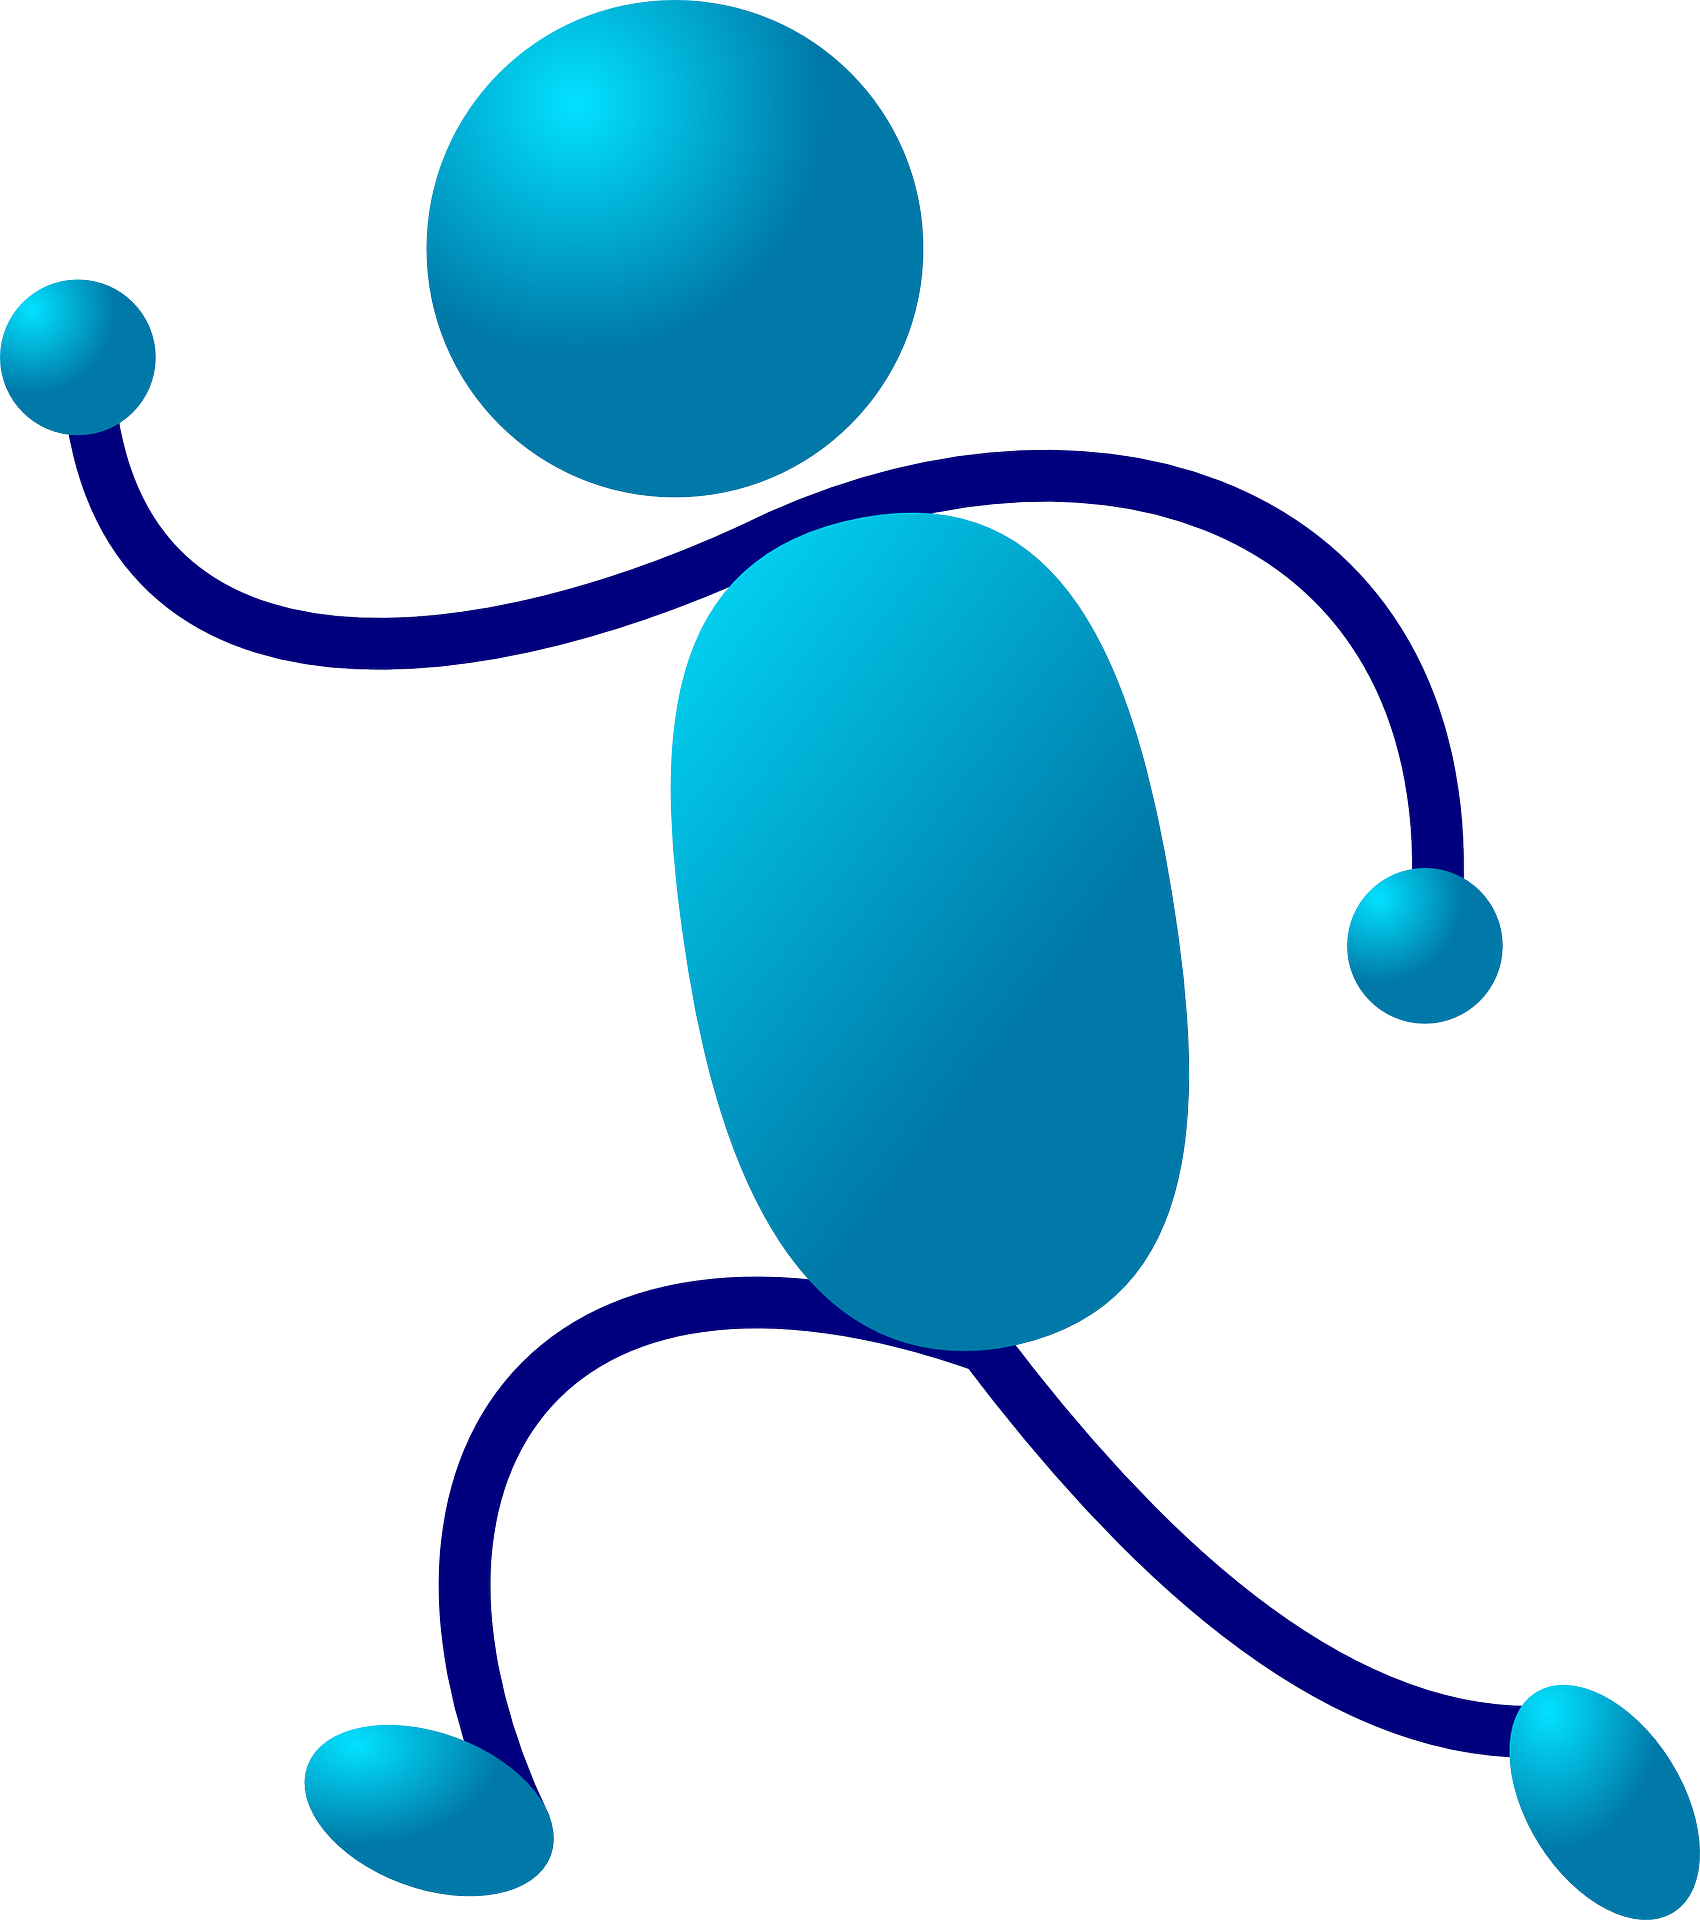 Blue cartoon people symbol,stick figure vector